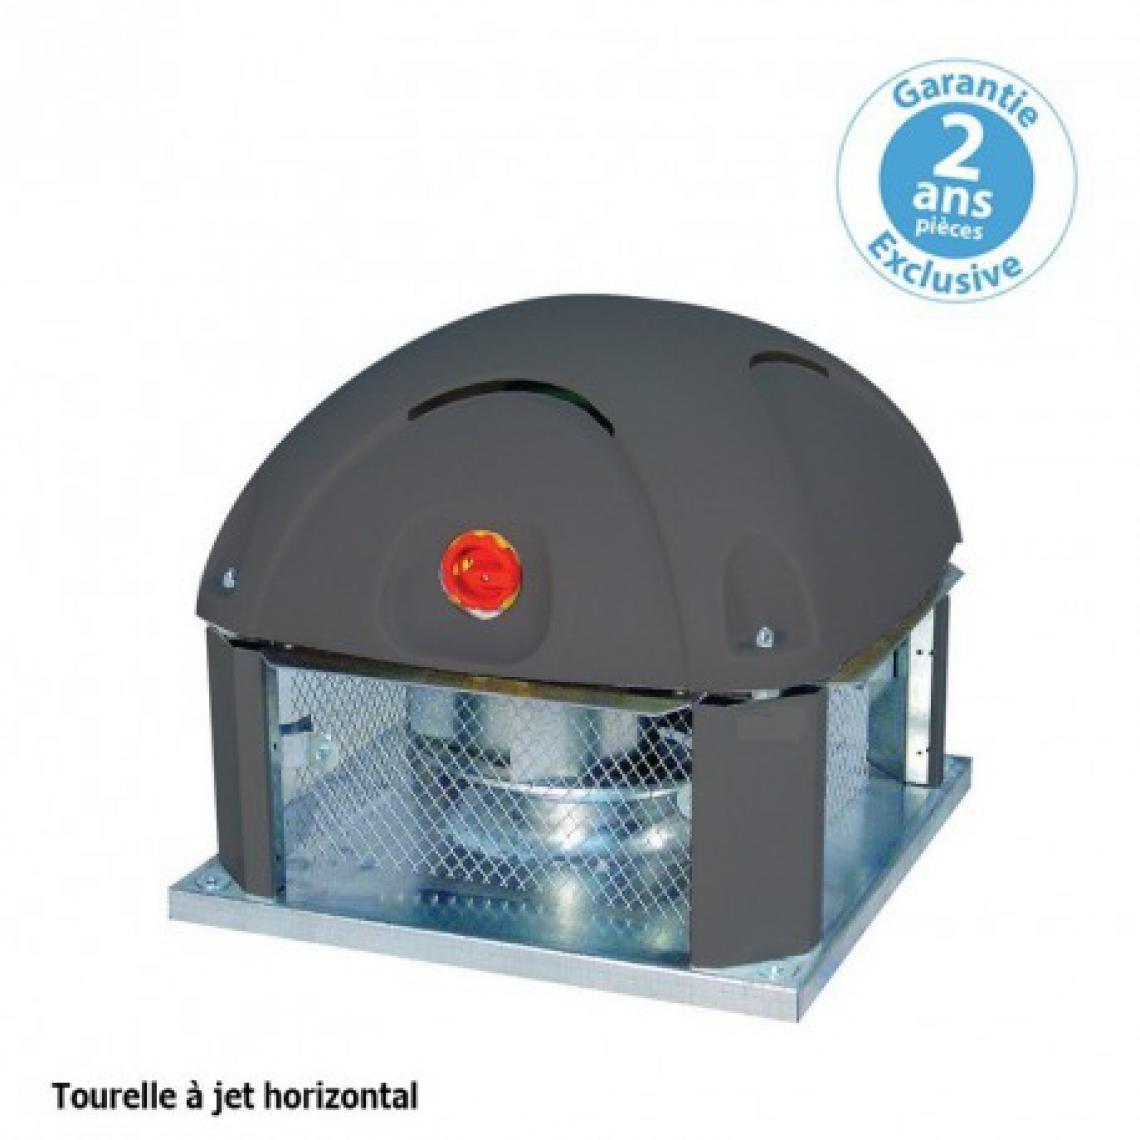 Furnotel - Tourelle 1 vitesse - triphasée - refoulement horizontal - 5000 m³ / h sous 390 Pa - - VMC, Ventilation